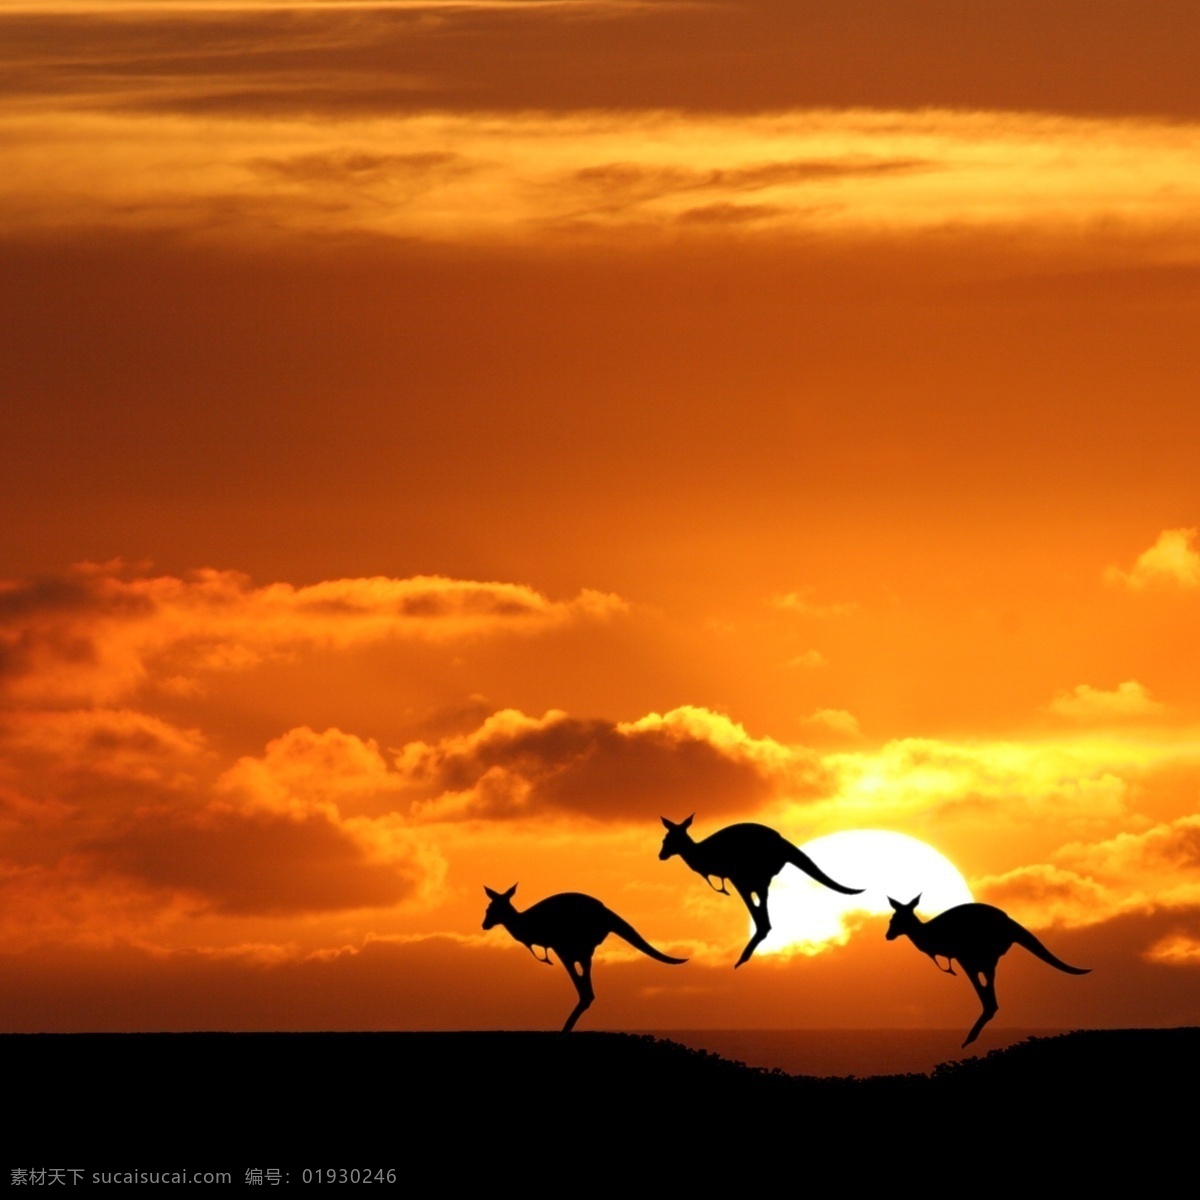 夕阳袋鼠 澳大利亚 日落 夕阳 袋鼠 太阳 天空 云 日落景色 夕阳景色 国外风景 国外旅游 旅游摄影